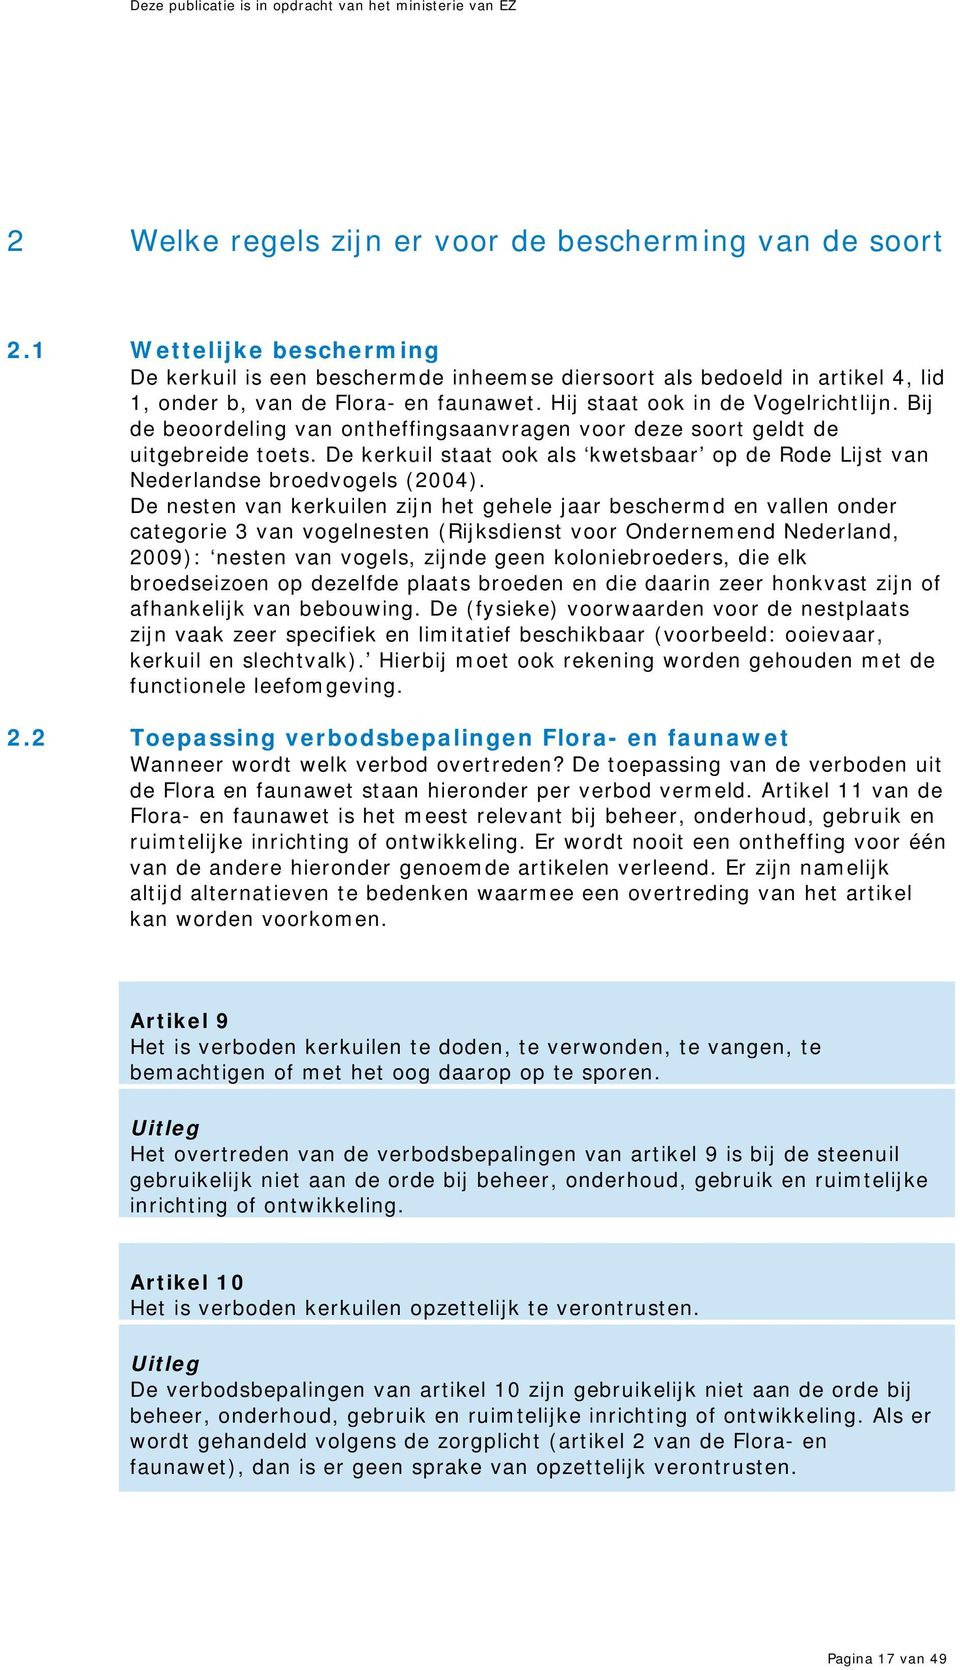 Bij de beoordeling van ontheffingsaanvragen voor deze soort geldt de uitgebreide toets. De kerkuil staat ook als kwetsbaar op de Rode Lijst van Nederlandse broedvogels (2004).